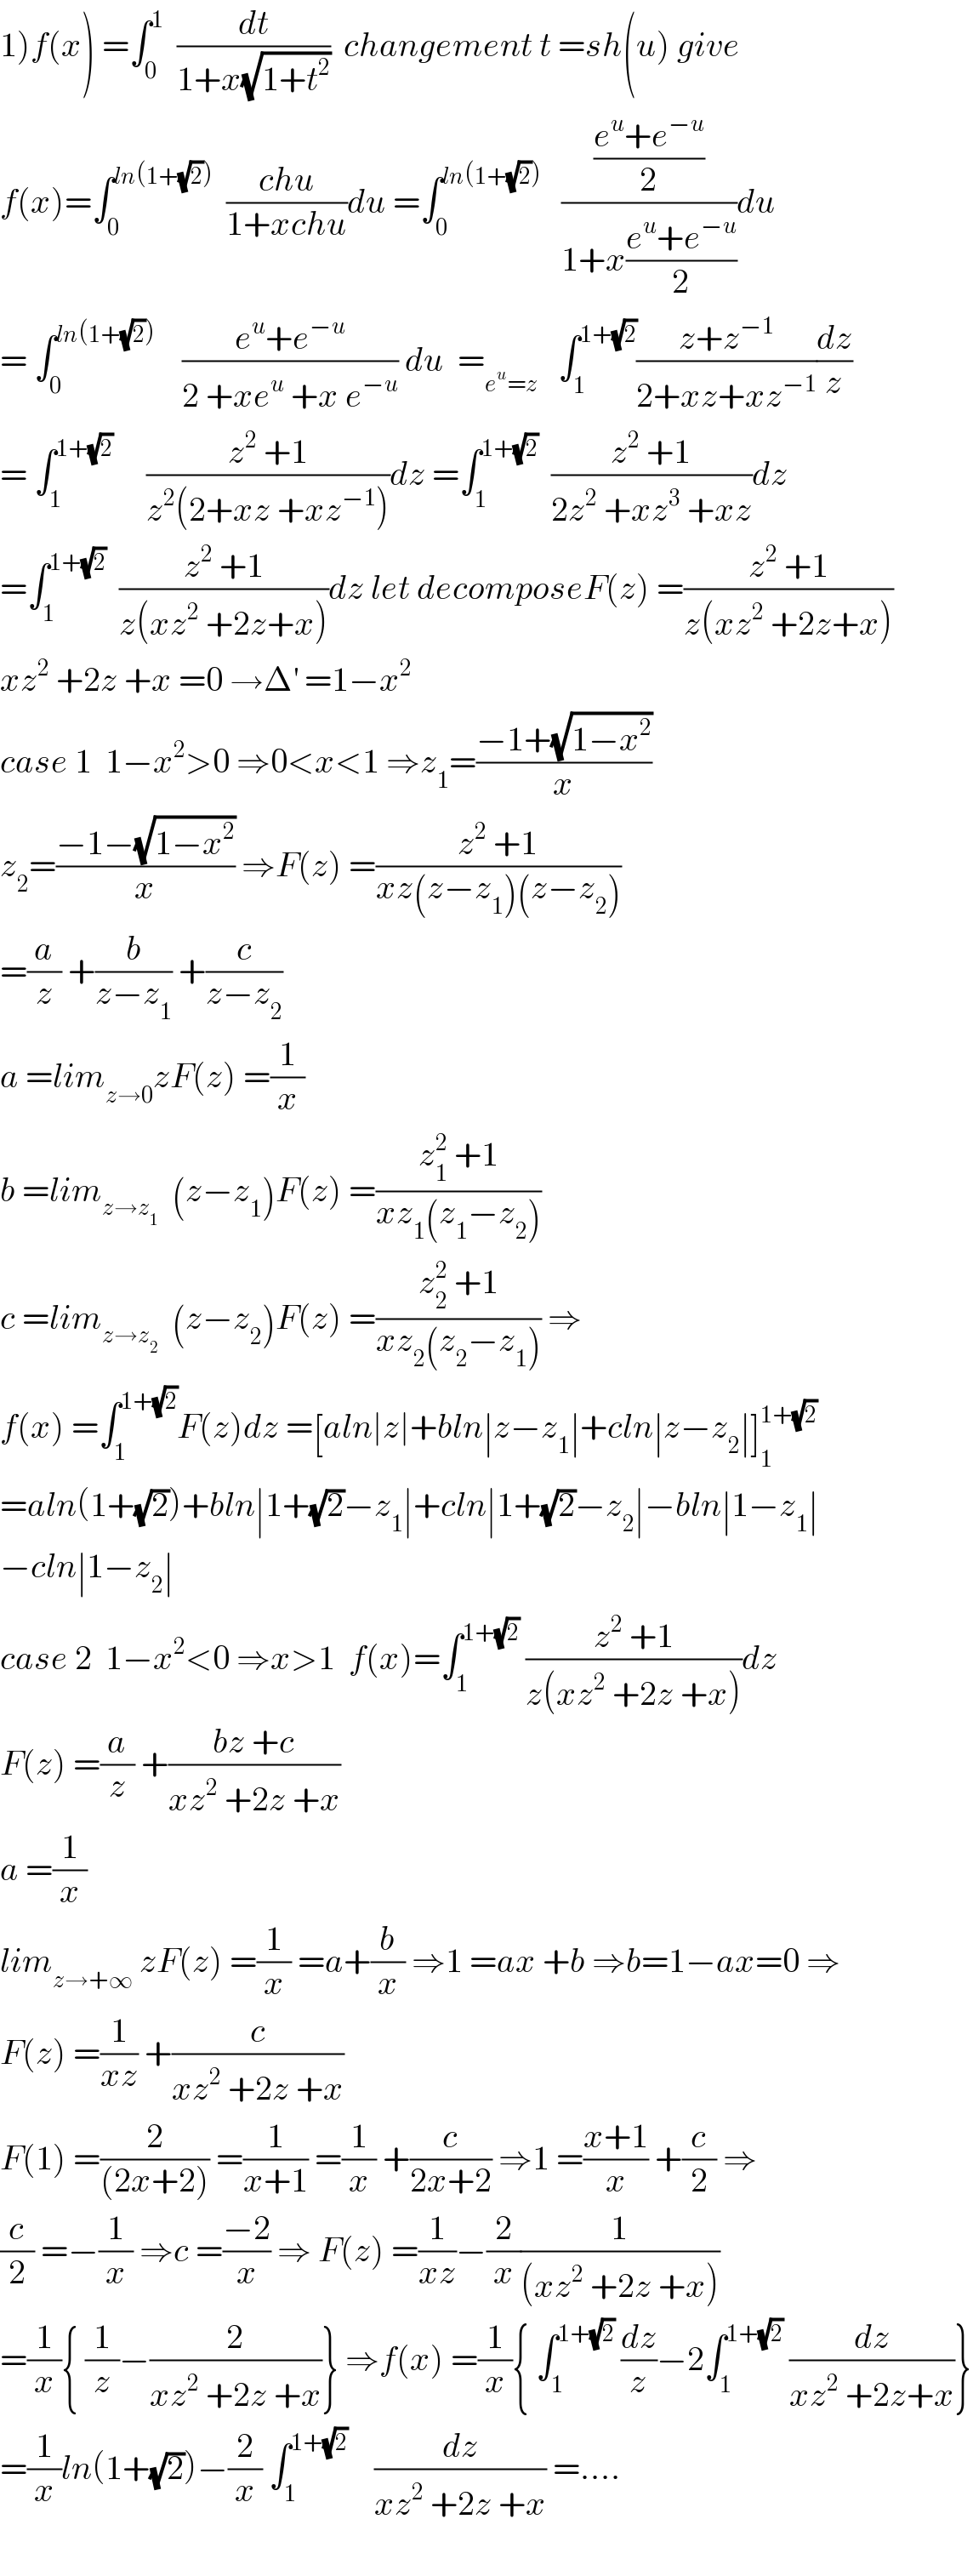 1)f(x) =∫_0 ^1   (dt/(1+x(√(1+t^2 ))))  changement t =sh(u) give  f(x)=∫_0 ^(ln(1+(√2)))   ((chu)/(1+xchu))du =∫_0 ^(ln(1+(√2)))    (((e^u +e^(−u) )/2)/(1+x((e^u +e^(−u) )/2)))du  = ∫_0 ^(ln(1+(√2)))     ((e^u +e^(−u) )/(2 +xe^u  +x e^(−u) )) du  =_(e^u =z)    ∫_1 ^(1+(√2)) ((z+z^(−1) )/(2+xz+xz^(−1) ))(dz/z)  = ∫_1 ^(1+(√2))      ((z^2  +1)/(z^2 (2+xz +xz^(−1) )))dz =∫_1 ^(1+(√2))   ((z^2  +1)/(2z^2  +xz^3  +xz))dz  =∫_1 ^(1+(√2))   ((z^2  +1)/(z(xz^2  +2z+x)))dz let decomposeF(z) =((z^2  +1)/(z(xz^2  +2z+x)))  xz^2  +2z +x =0 →Δ^′  =1−x^2   case 1  1−x^2 >0 ⇒0<x<1 ⇒z_1 =((−1+(√(1−x^2 )))/x)  z_2 =((−1−(√(1−x^2 )))/x) ⇒F(z) =((z^2  +1)/(xz(z−z_1 )(z−z_2 )))  =(a/z) +(b/(z−z_1 )) +(c/(z−z_2 ))  a =lim_(z→0) zF(z) =(1/x)  b =lim_(z→z_1 )   (z−z_1 )F(z) =((z_1 ^2  +1)/(xz_1 (z_1 −z_2 )))   c =lim_(z→z_2 )   (z−z_2 )F(z) =((z_2 ^2  +1)/(xz_2 (z_2 −z_1 ))) ⇒  f(x) =∫_1 ^(1+(√2)) F(z)dz =[aln∣z∣+bln∣z−z_1 ∣+cln∣z−z_2 ∣]_1 ^(1+(√2))   =aln(1+(√2))+bln∣1+(√2)−z_1 ∣+cln∣1+(√2)−z_2 ∣−bln∣1−z_1 ∣  −cln∣1−z_2 ∣  case 2  1−x^2 <0 ⇒x>1  f(x)=∫_1 ^(1+(√2))  ((z^2  +1)/(z(xz^2  +2z +x)))dz  F(z) =(a/z) +((bz +c)/(xz^2  +2z +x))  a =(1/x)  lim_(z→+∞)  zF(z) =(1/x) =a+(b/x) ⇒1 =ax +b ⇒b=1−ax=0 ⇒  F(z) =(1/(xz)) +(c/(xz^2  +2z +x))  F(1) =(2/((2x+2))) =(1/(x+1)) =(1/x) +(c/(2x+2)) ⇒1 =((x+1)/x) +(c/2) ⇒  (c/2) =−(1/x) ⇒c =((−2)/x) ⇒ F(z) =(1/(xz))−(2/x)(1/((xz^2  +2z +x)))  =(1/x){ (1/z)−(2/(xz^2  +2z +x))} ⇒f(x) =(1/x){ ∫_1 ^(1+(√2))  (dz/z)−2∫_1 ^(1+(√2))  (dz/(xz^2  +2z+x))}  =(1/x)ln(1+(√2))−(2/x) ∫_1 ^(1+(√2))     (dz/(xz^2  +2z +x)) =....    